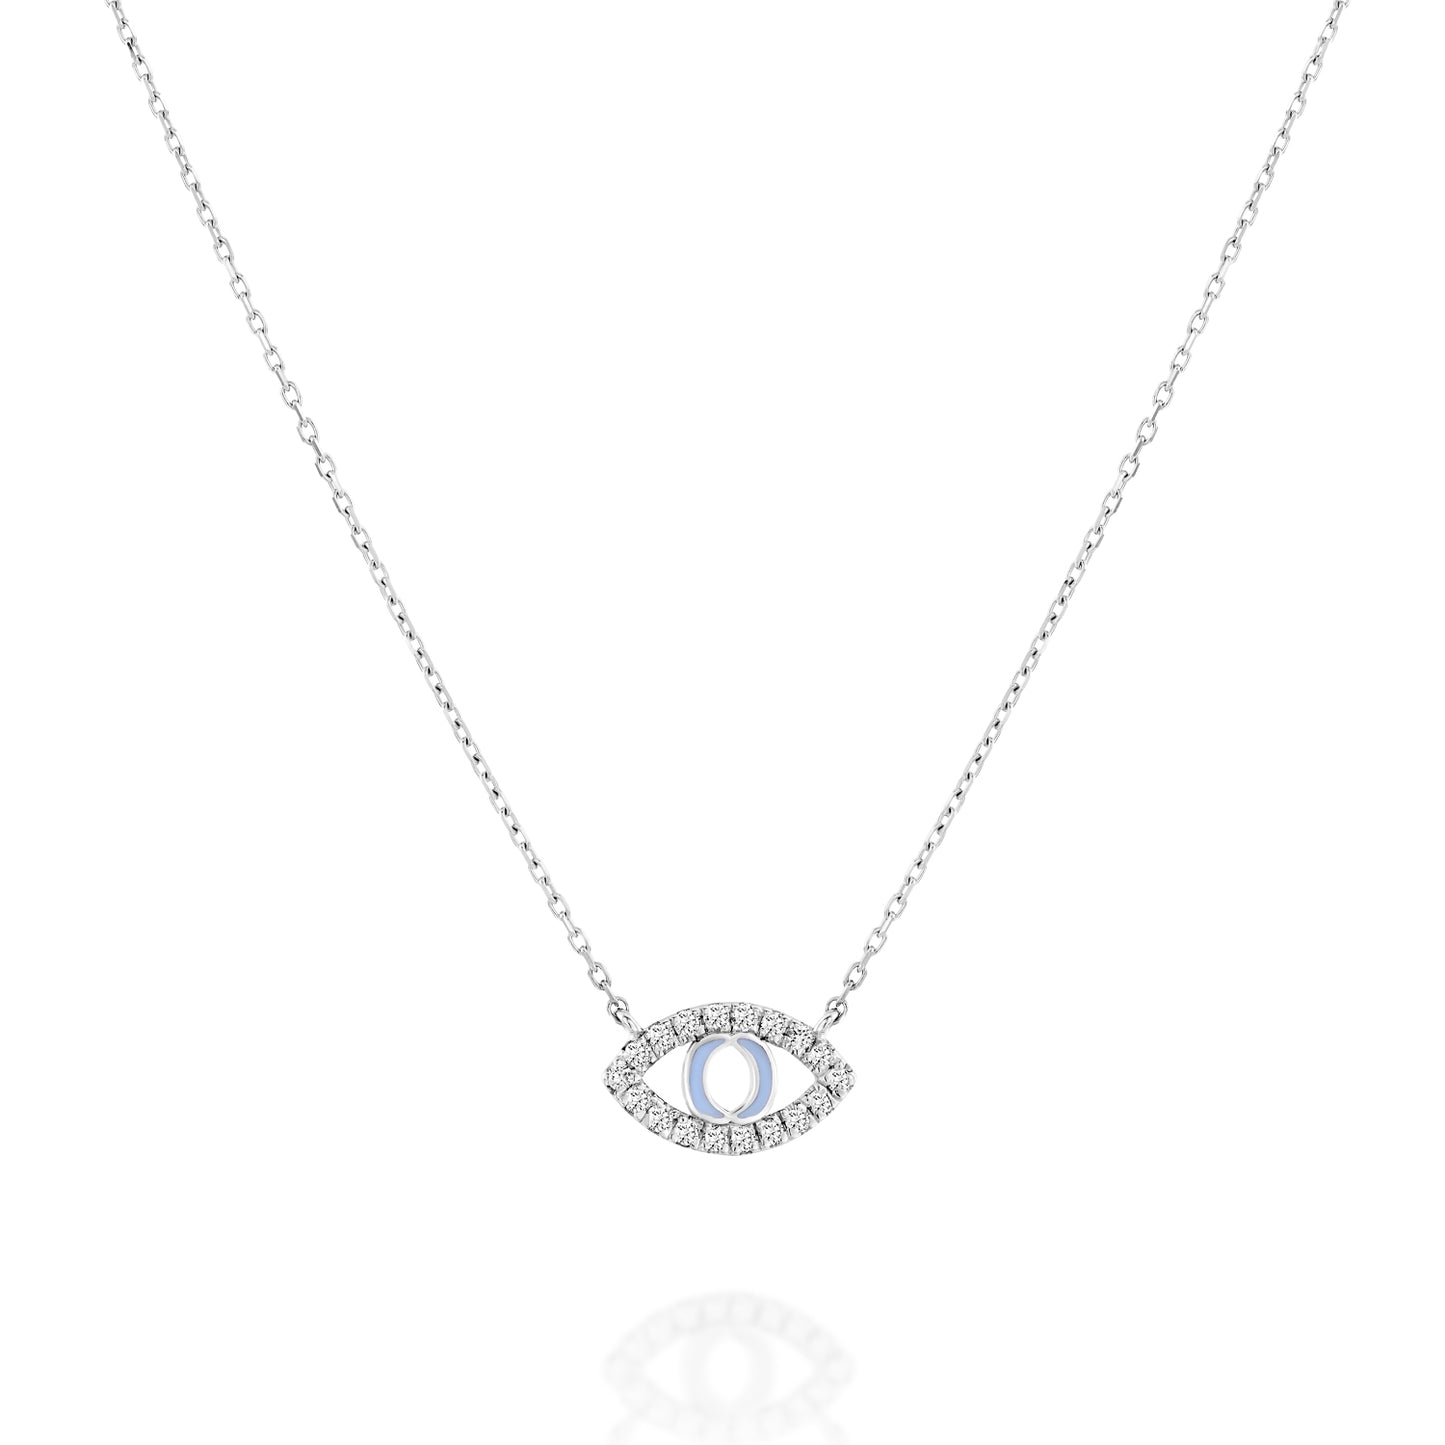 White Diamonds Eye Shape Necklace 